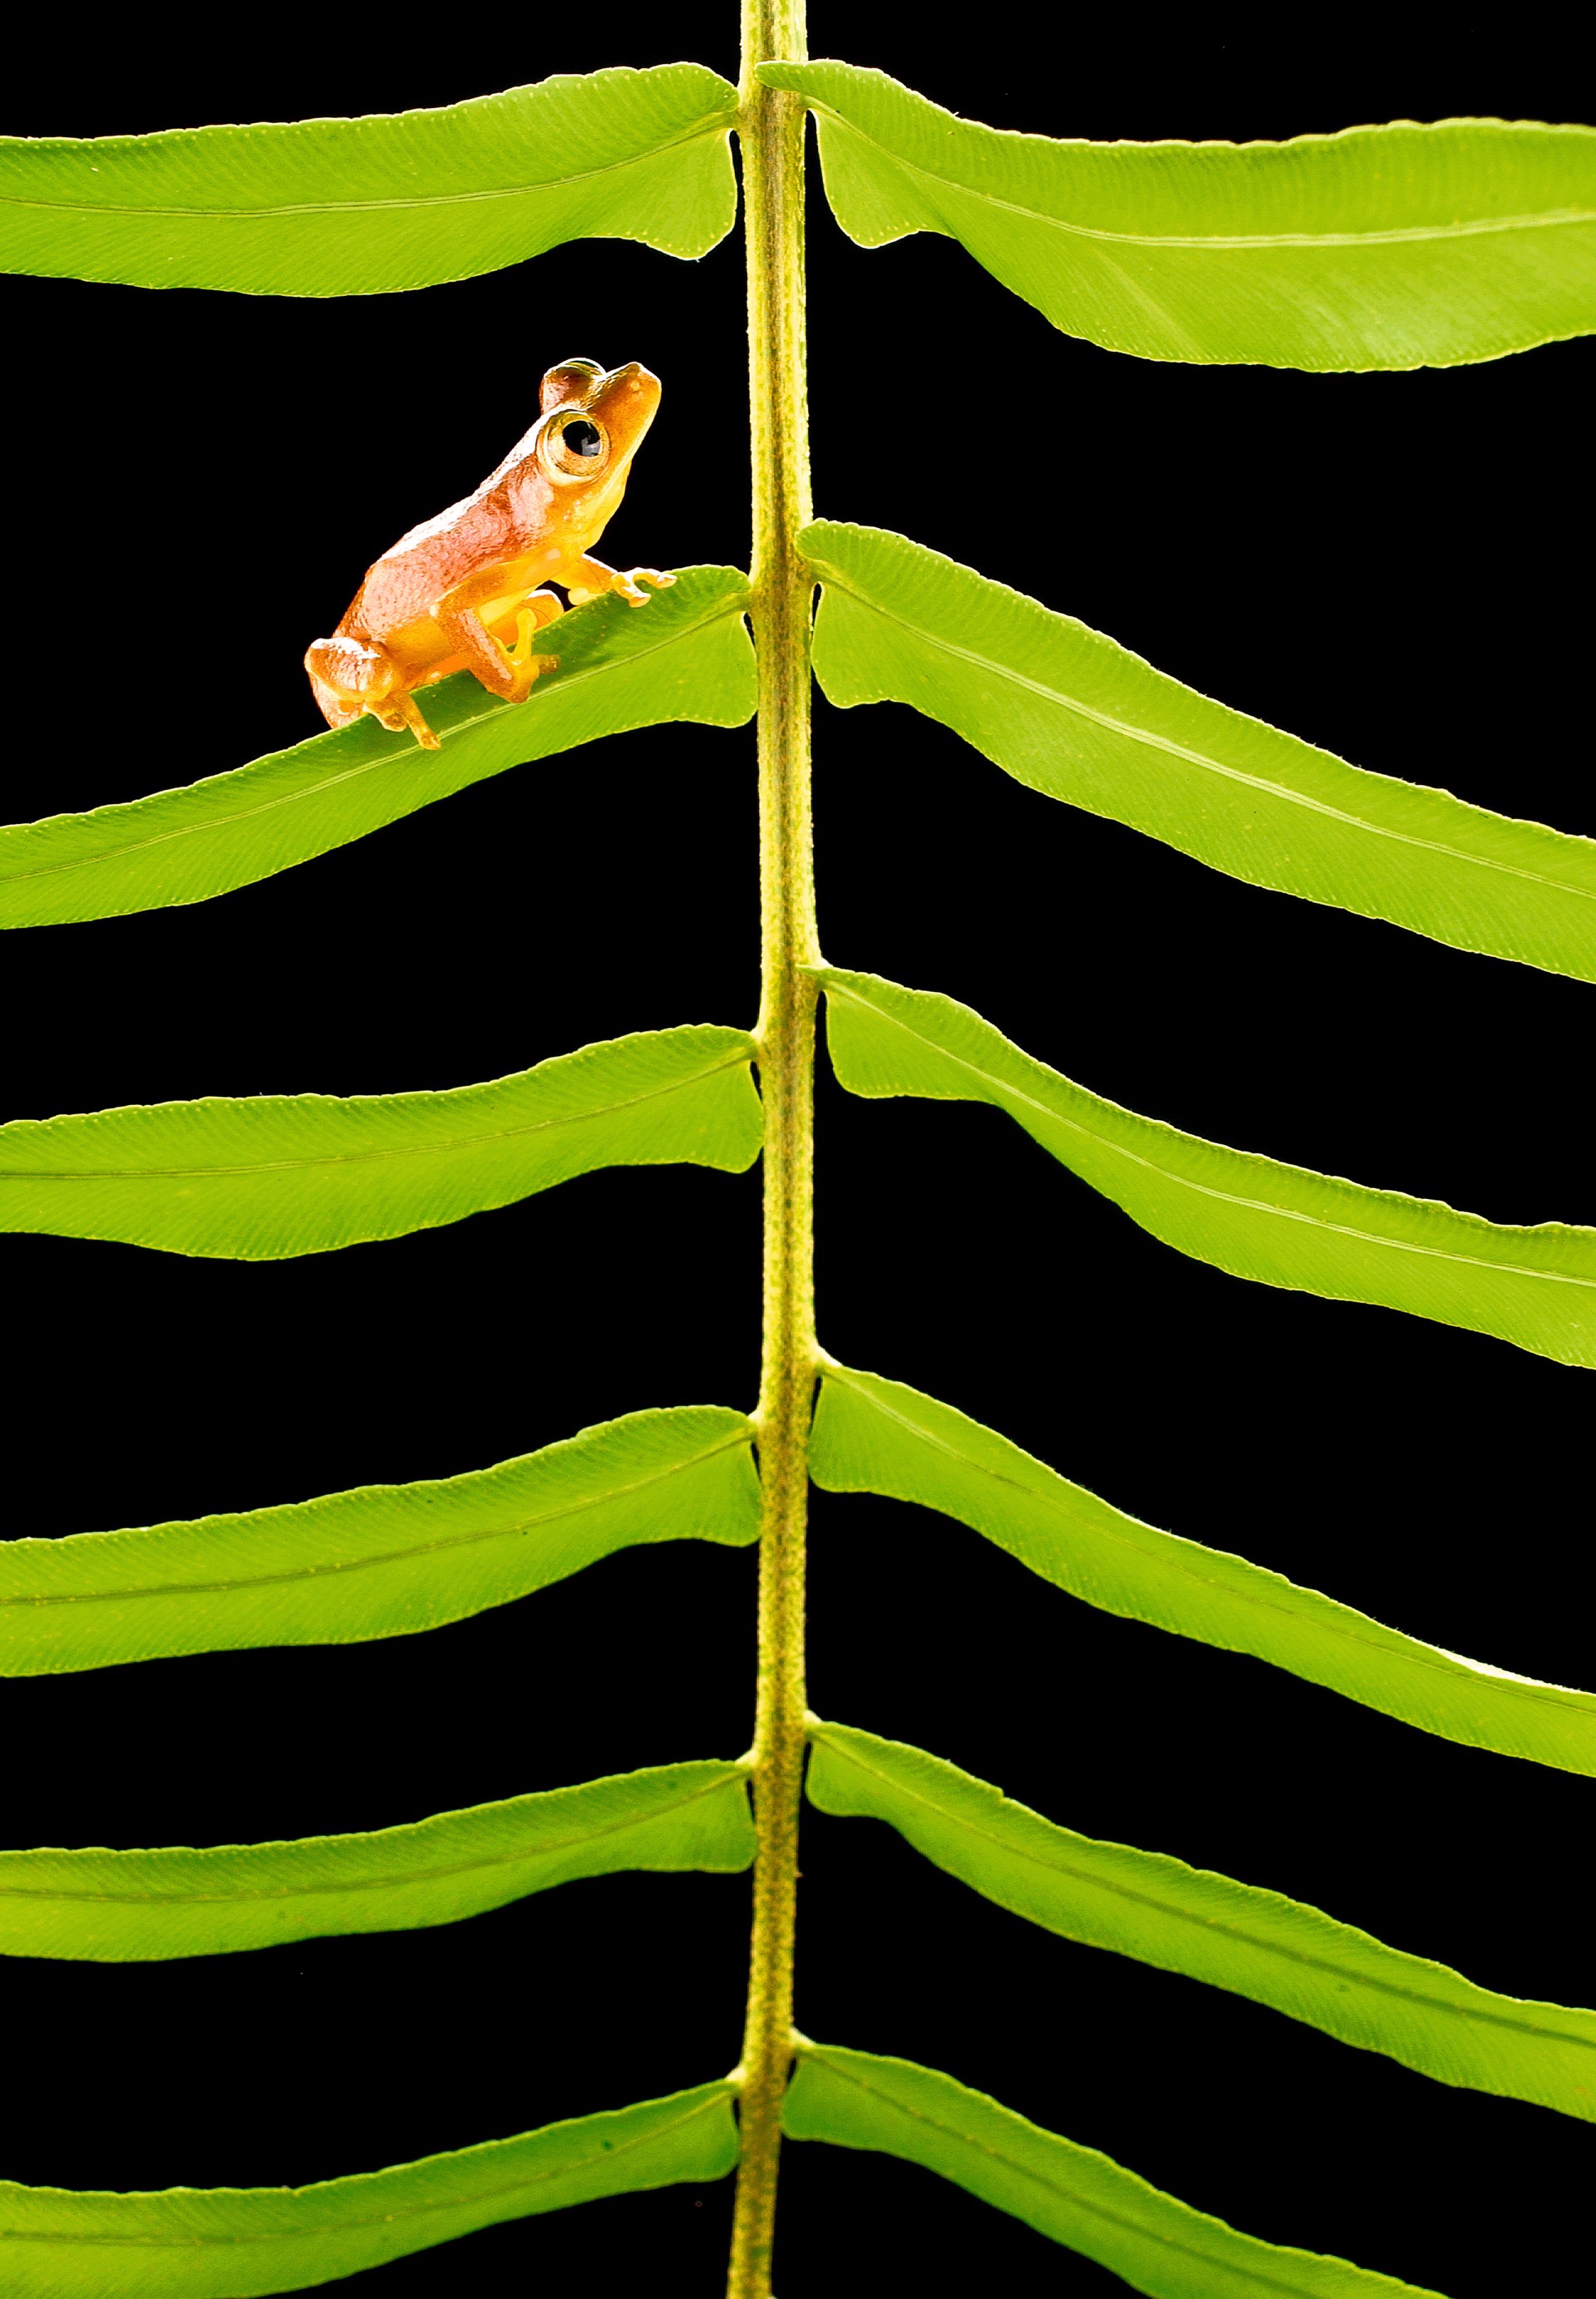 Frog on Fern by Carlton Ward Photography